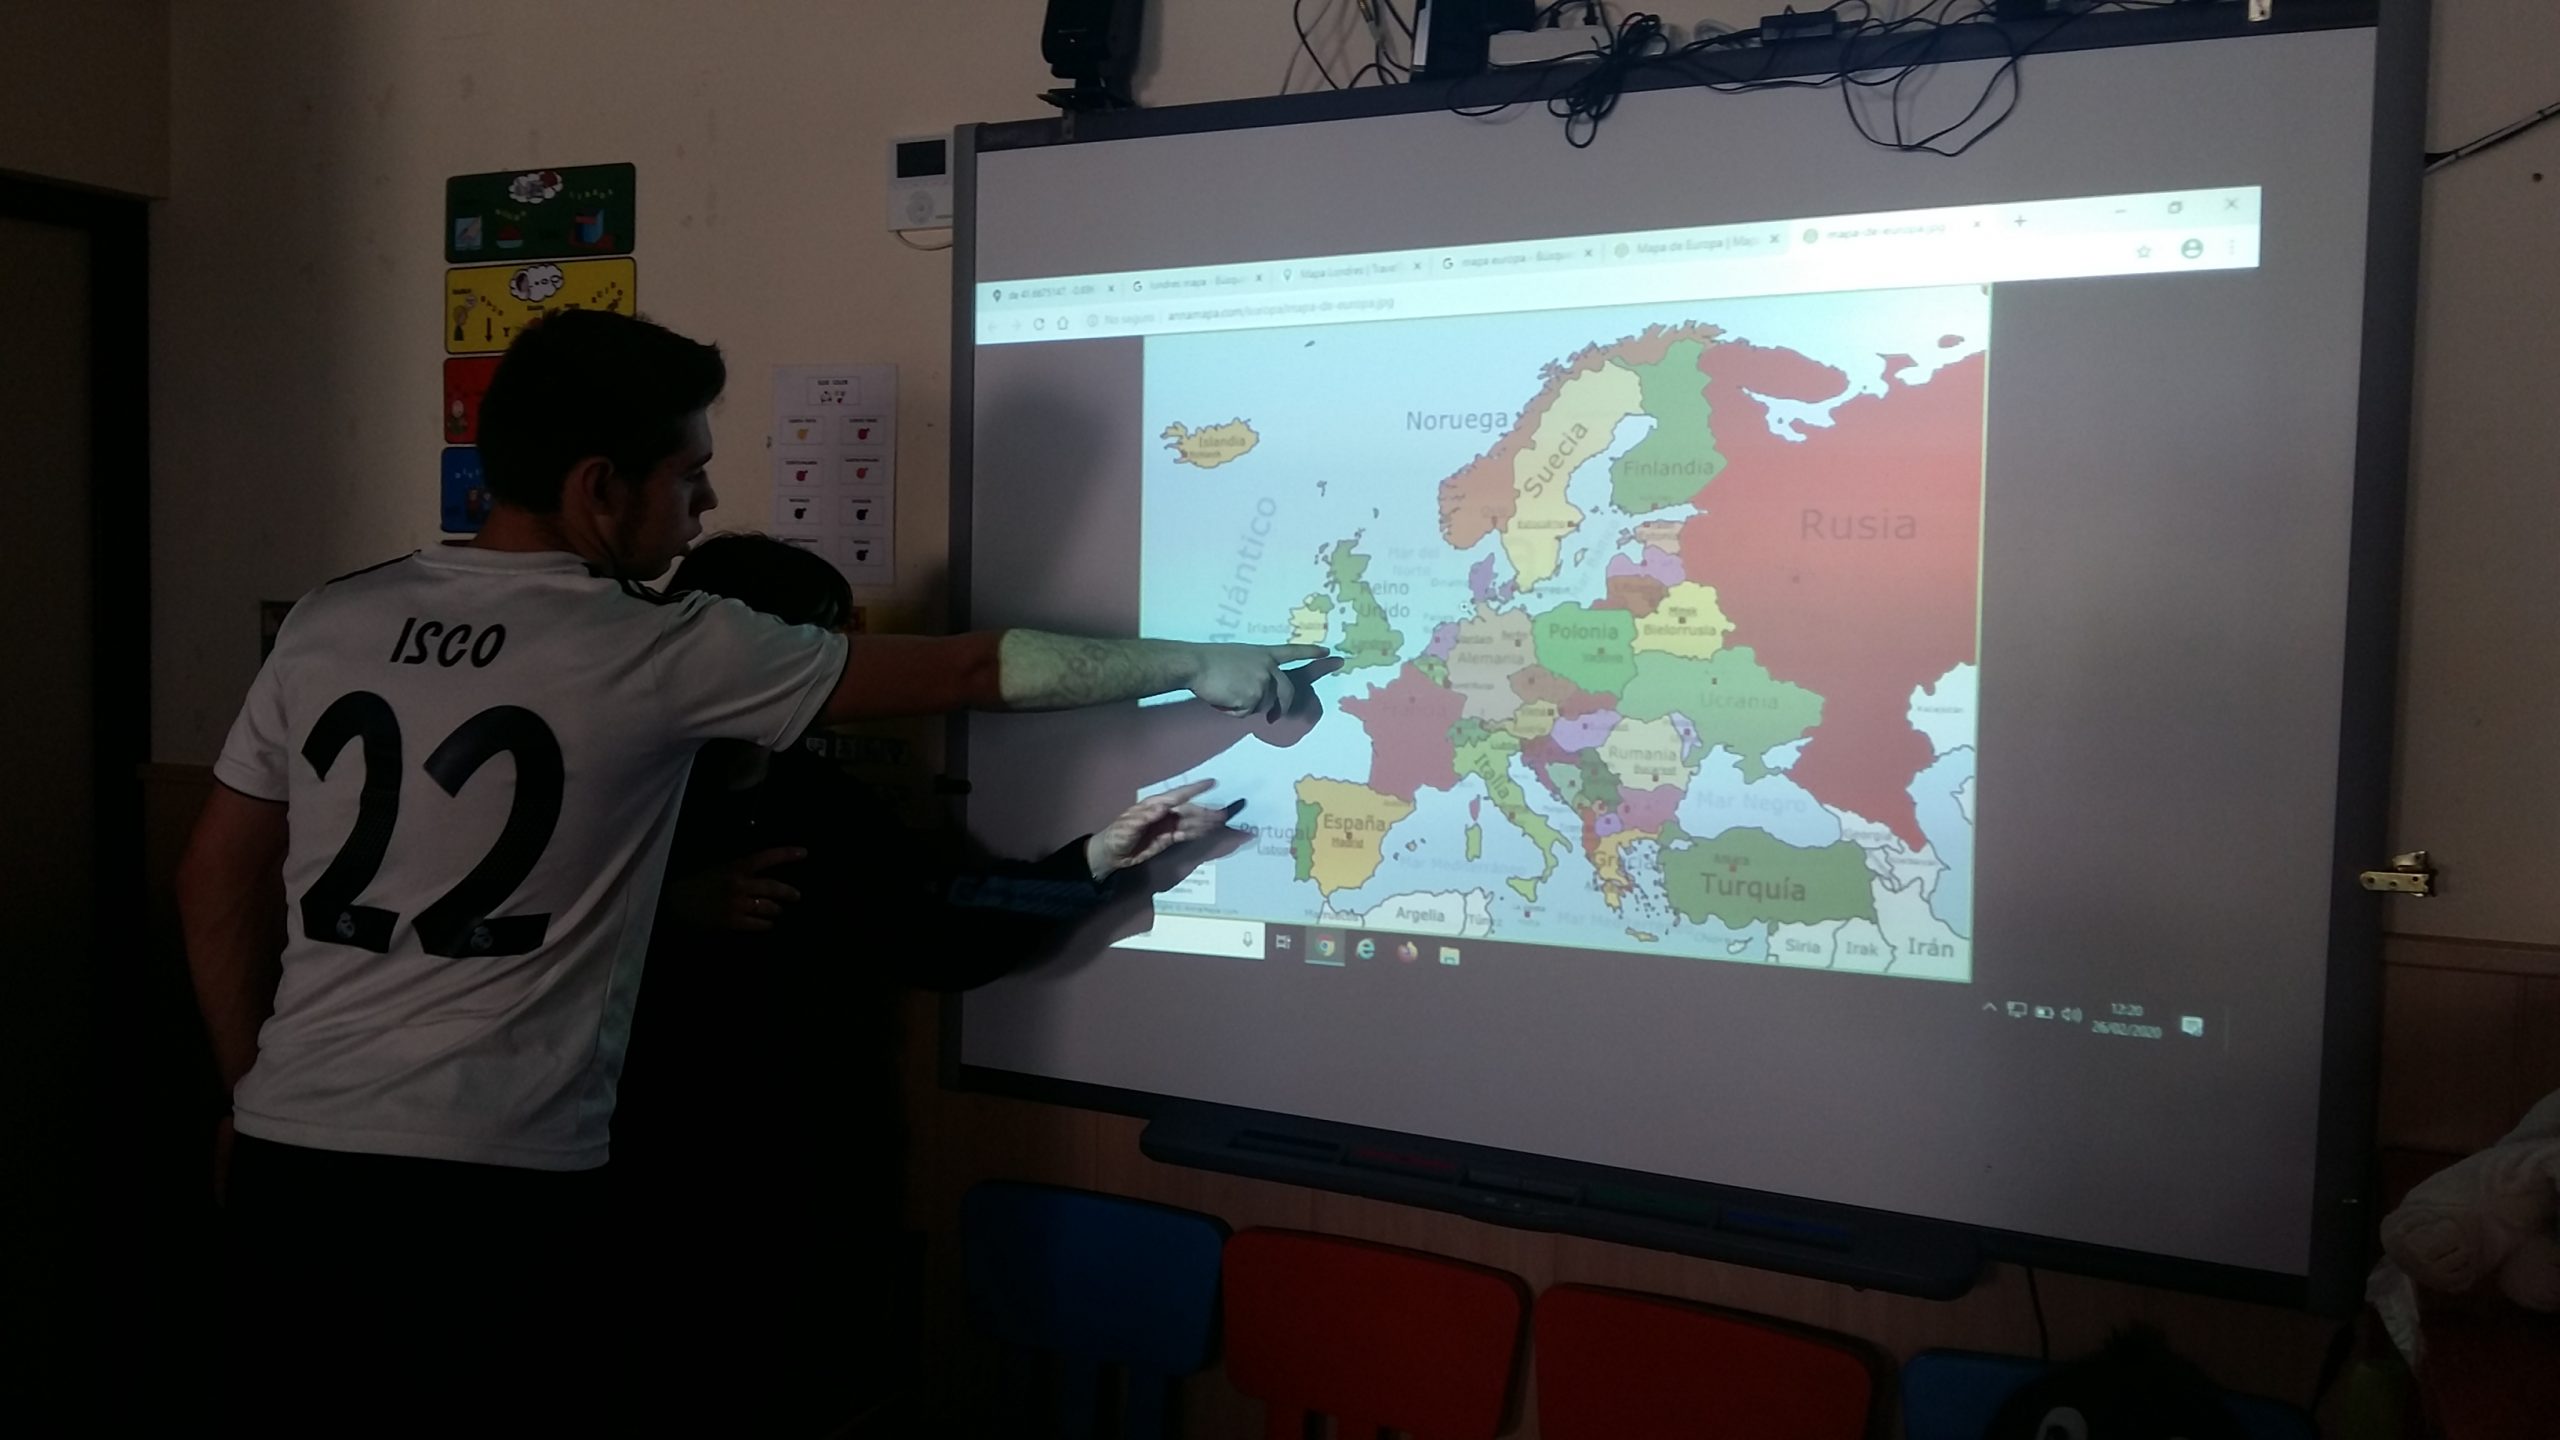 Alumno localizando Londres en un mapa proyectado en la pizarra digital